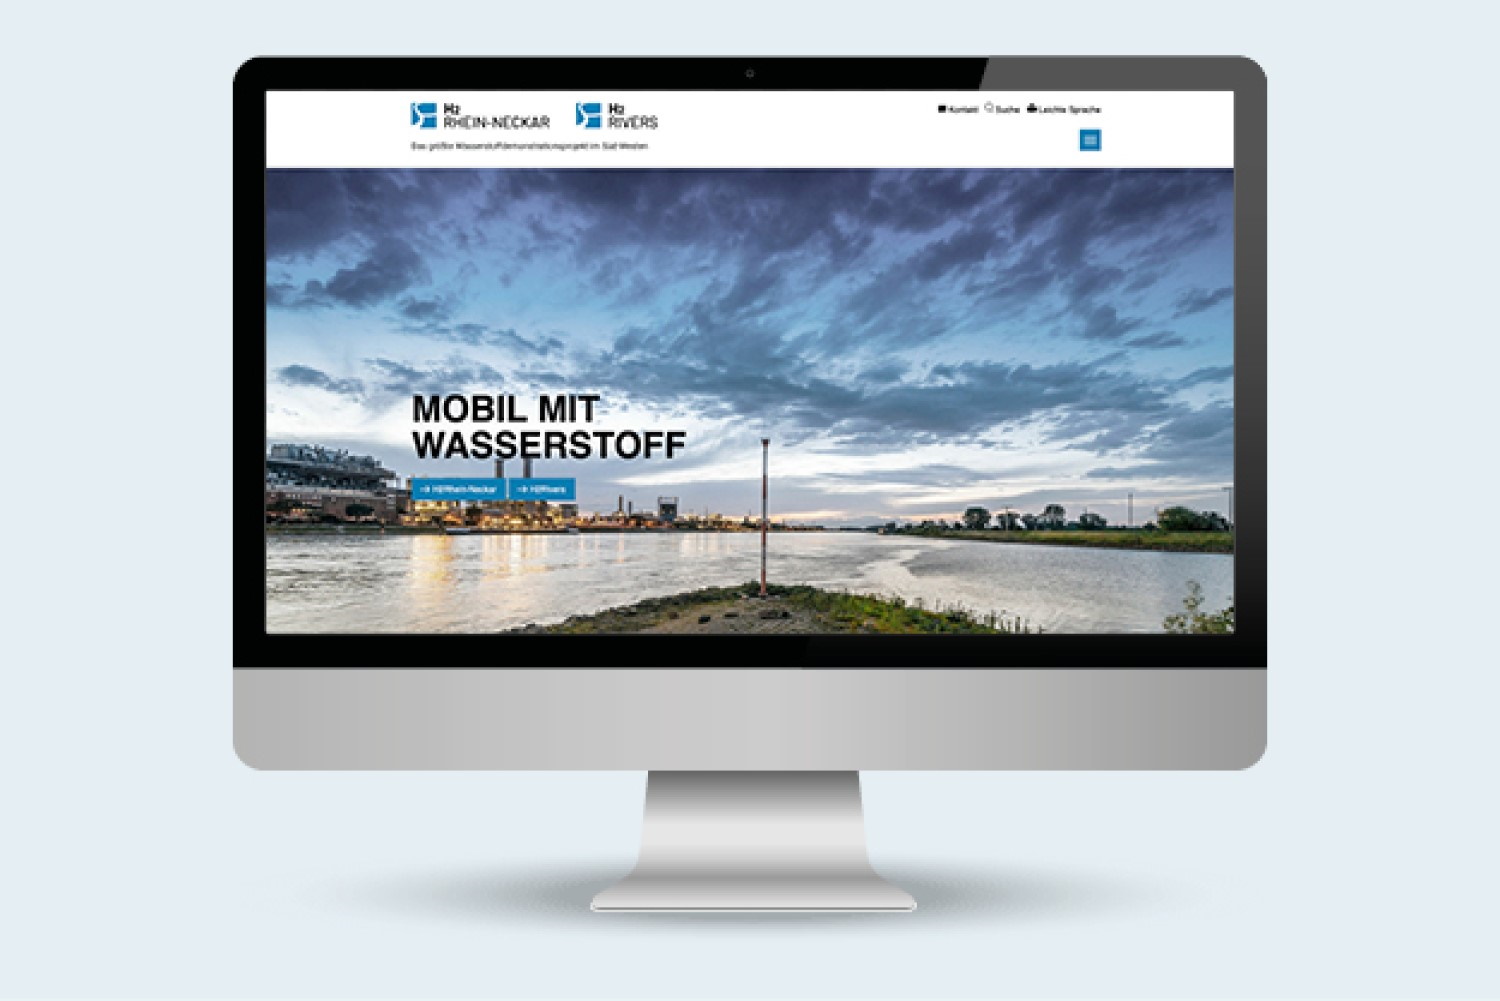 iMac Bildschirm zeigt die Website von H2Rivers und H2Rhein-Neckar an